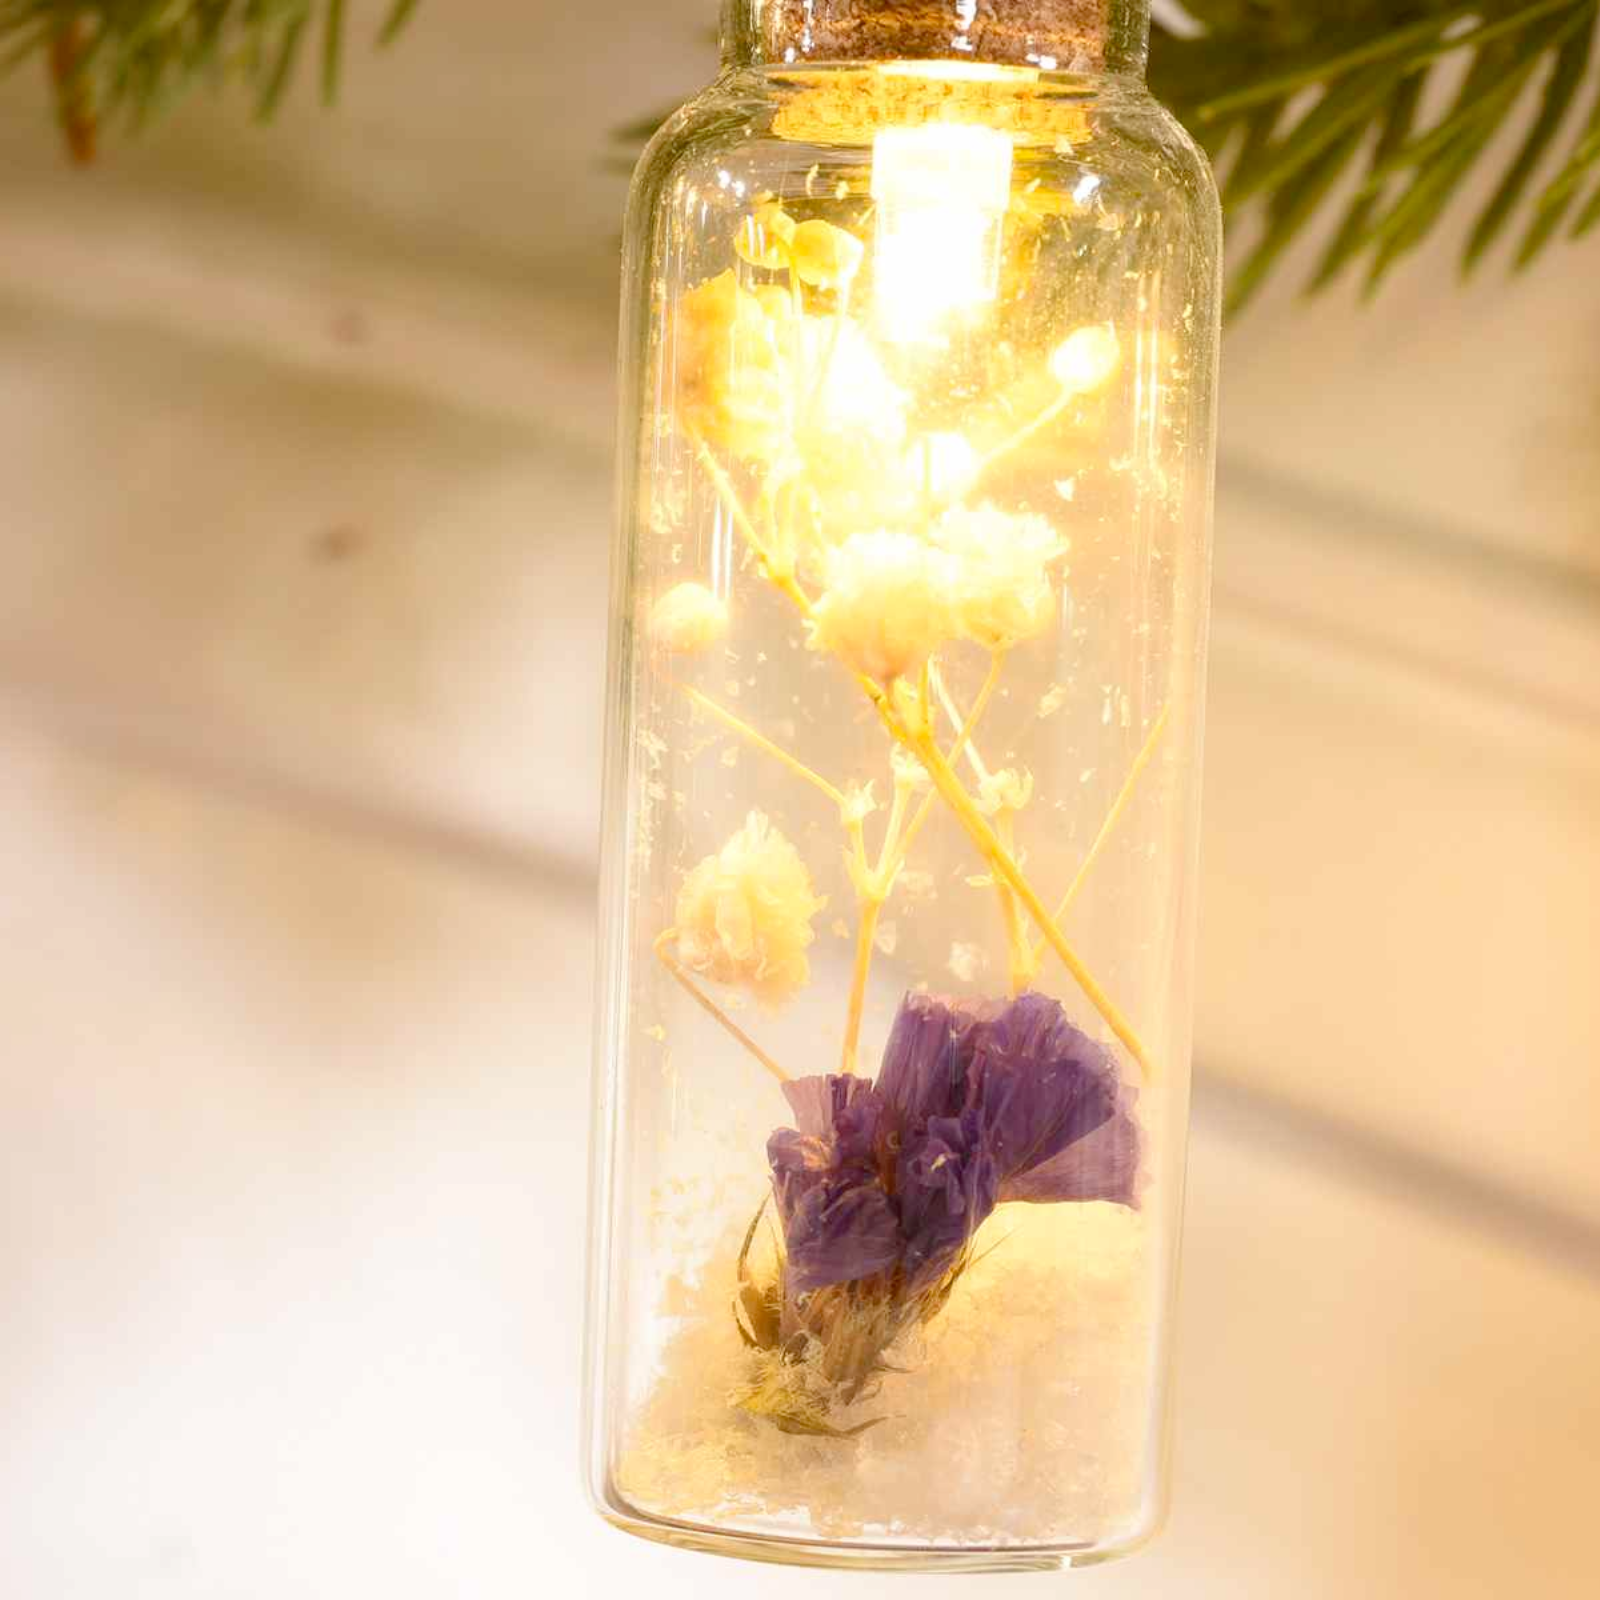 Catena luminosa 10 barattoli in vetro contenenti fiori secchi e luci led decorazioni natalizie